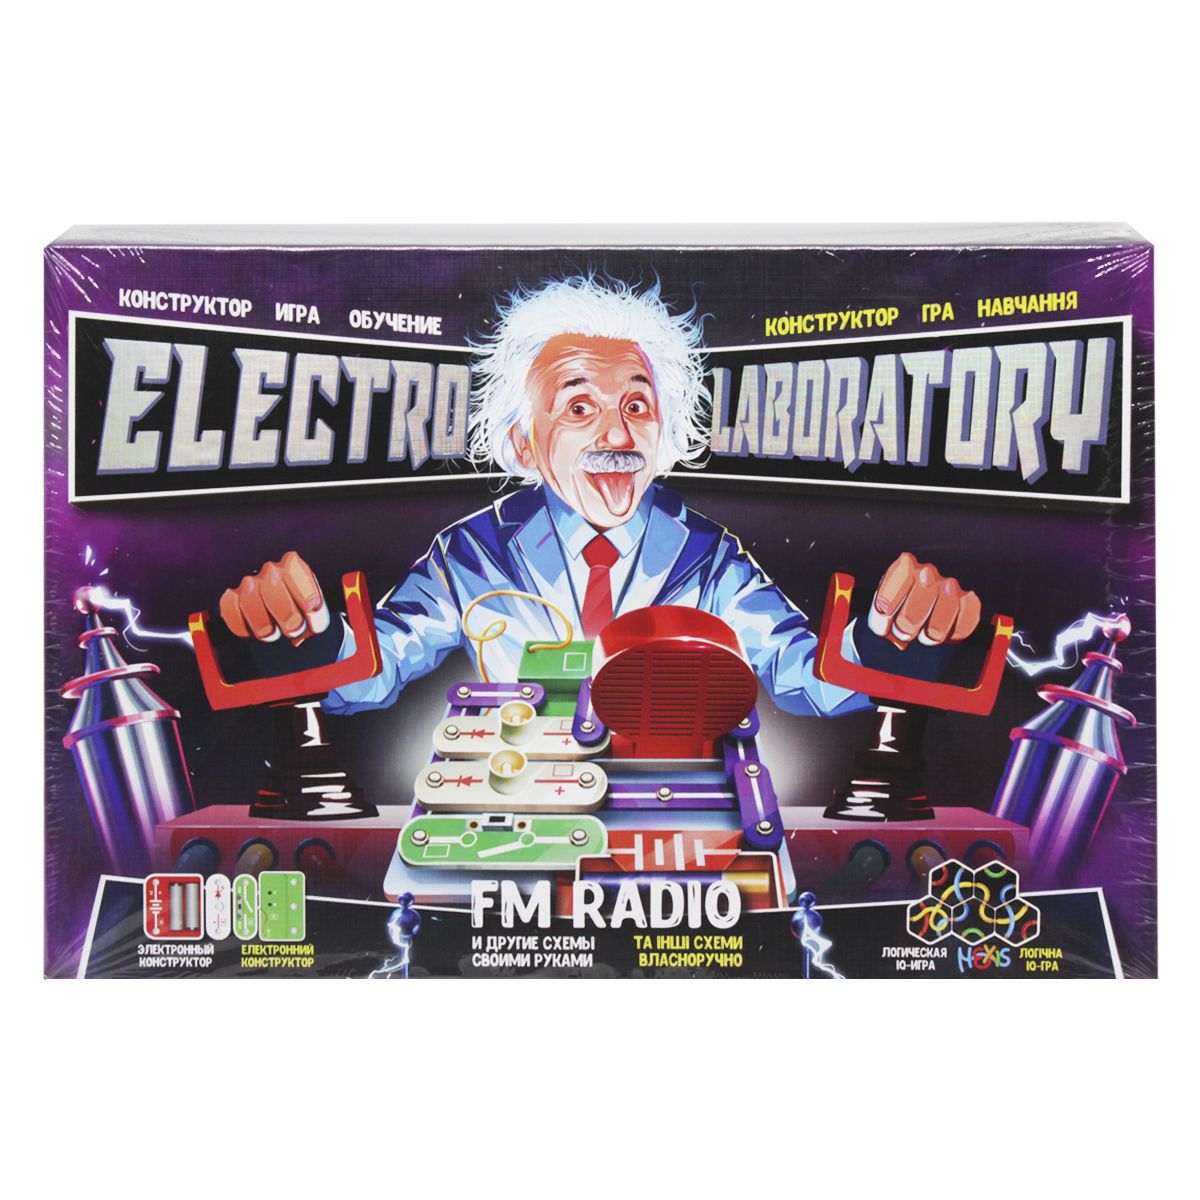 Электронный конструктор "Electro Laboratory.  FM Radio"